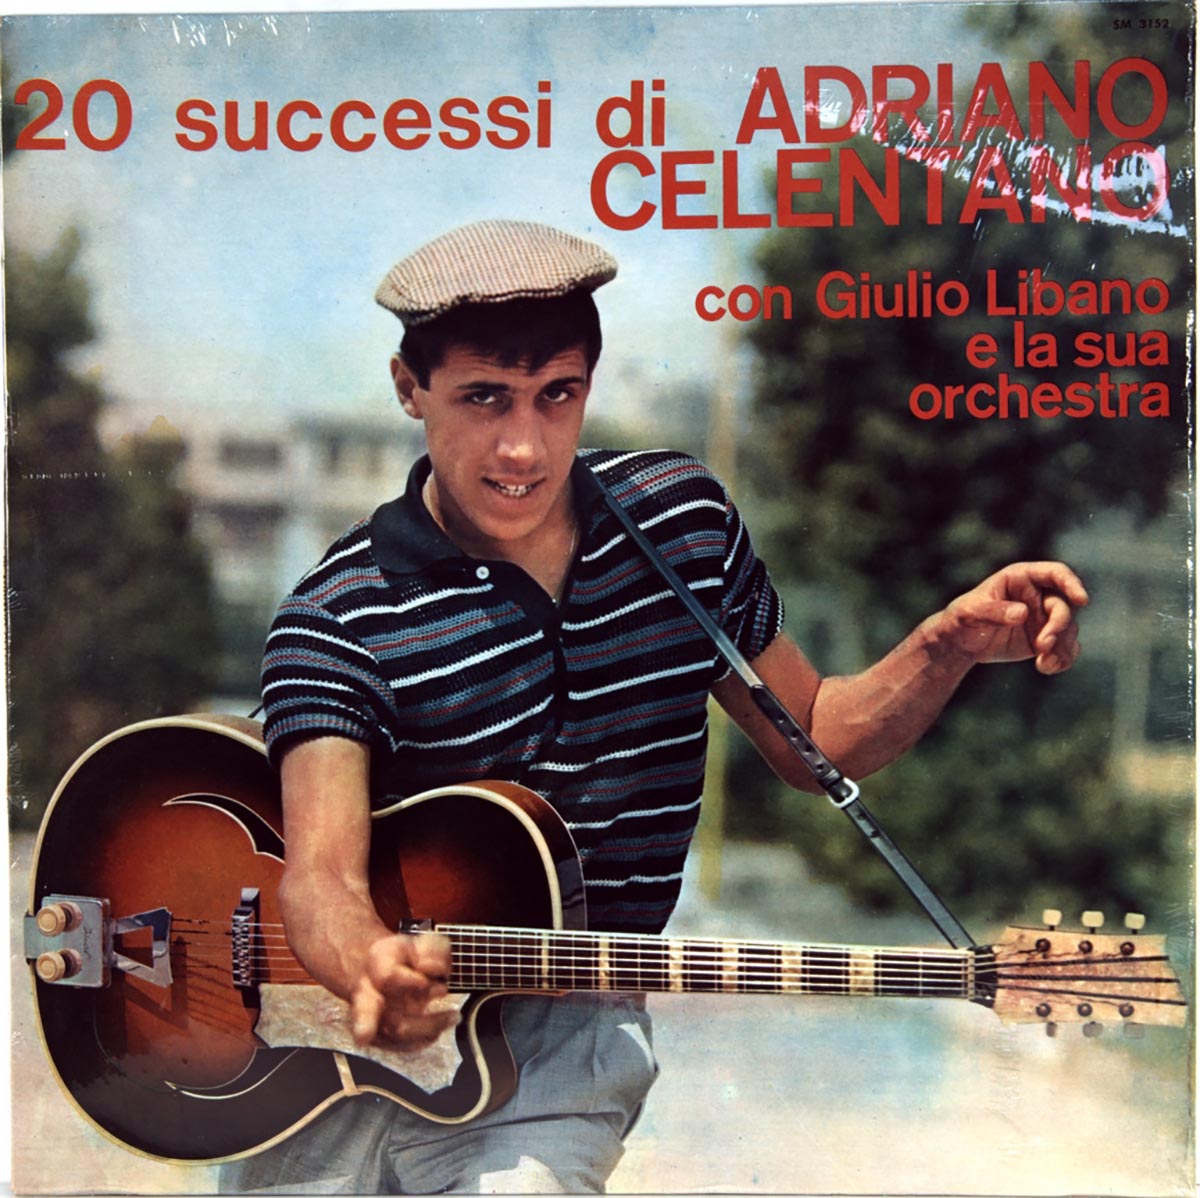 Couverture de "Adriano Celentano Con Giulio Libano E La Sua Orchestra" (1960)